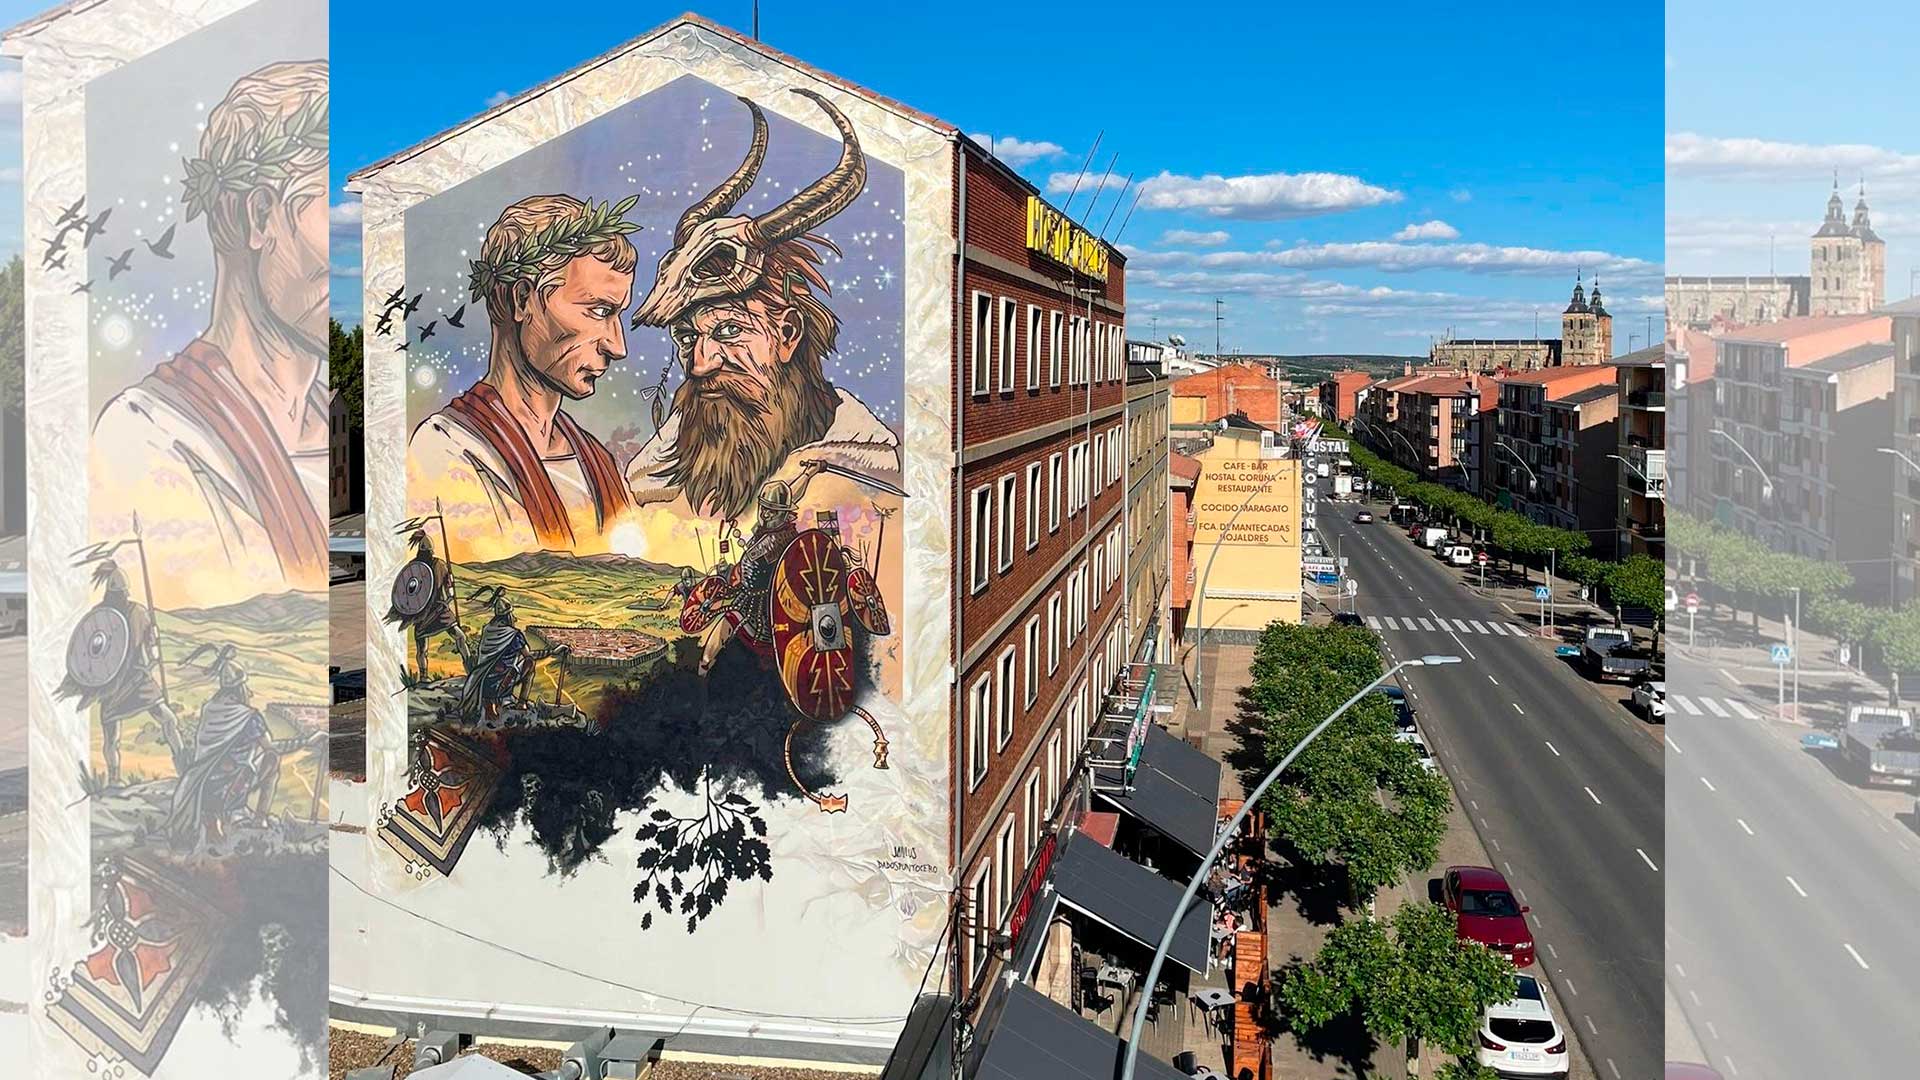 El mural está en la fachada lateral del Hostal Gallego. | L.N.C.